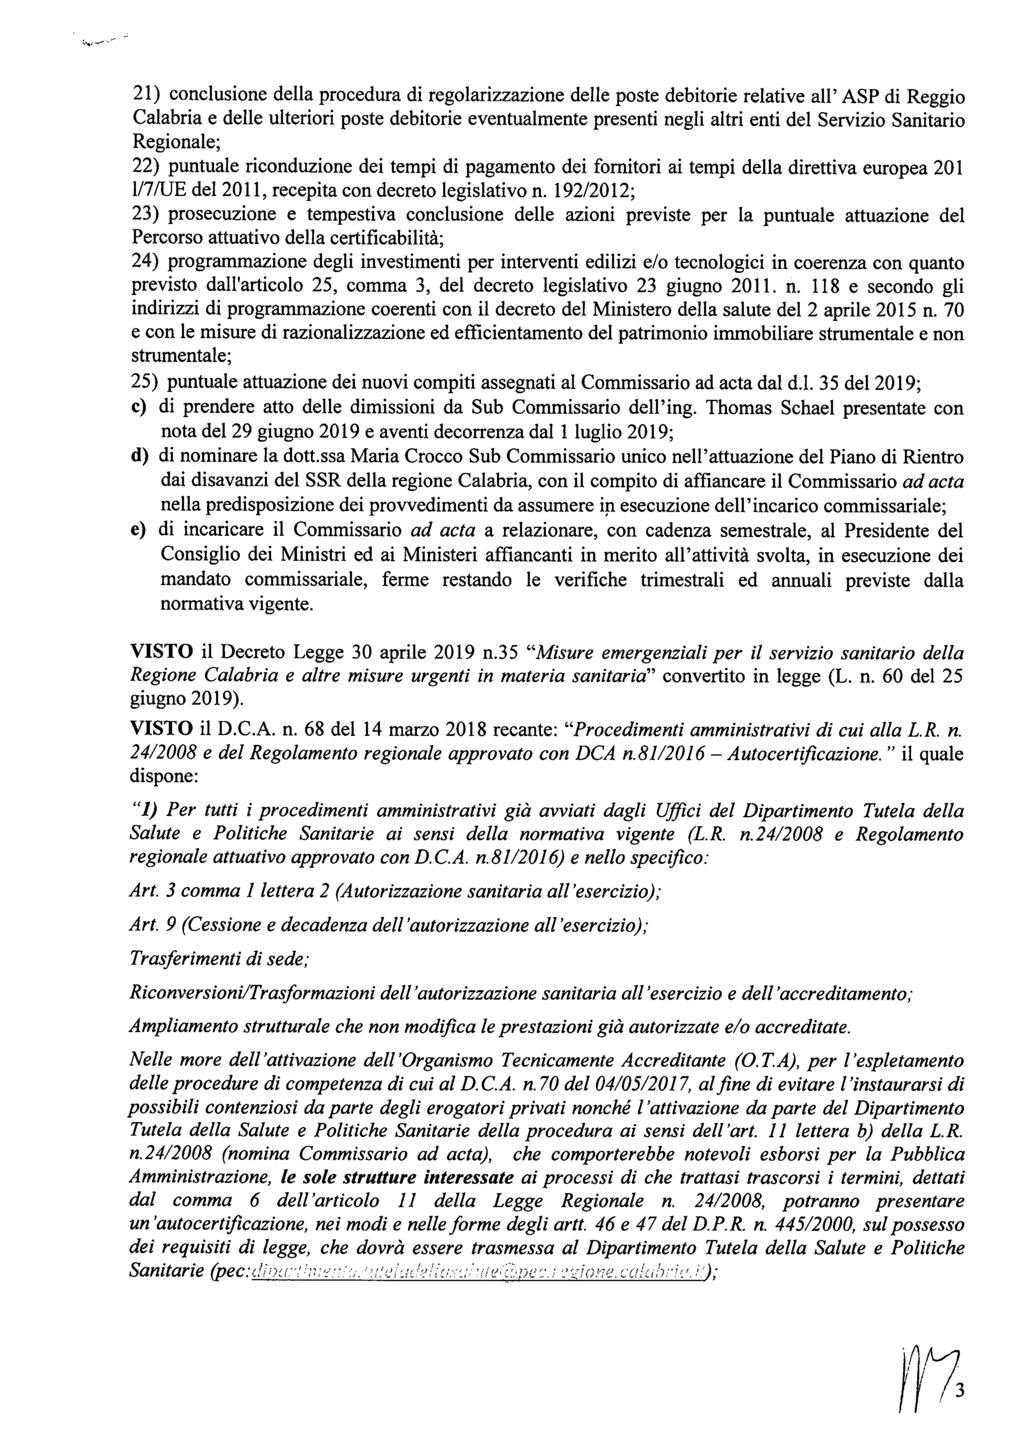 21) conclusione della procedura di regolarizzazione delle poste debitorie relative all' ASP di Reggio Calabria e delle ulteriori poste debitorie eventualmente presenti negli altri enti del Servizio